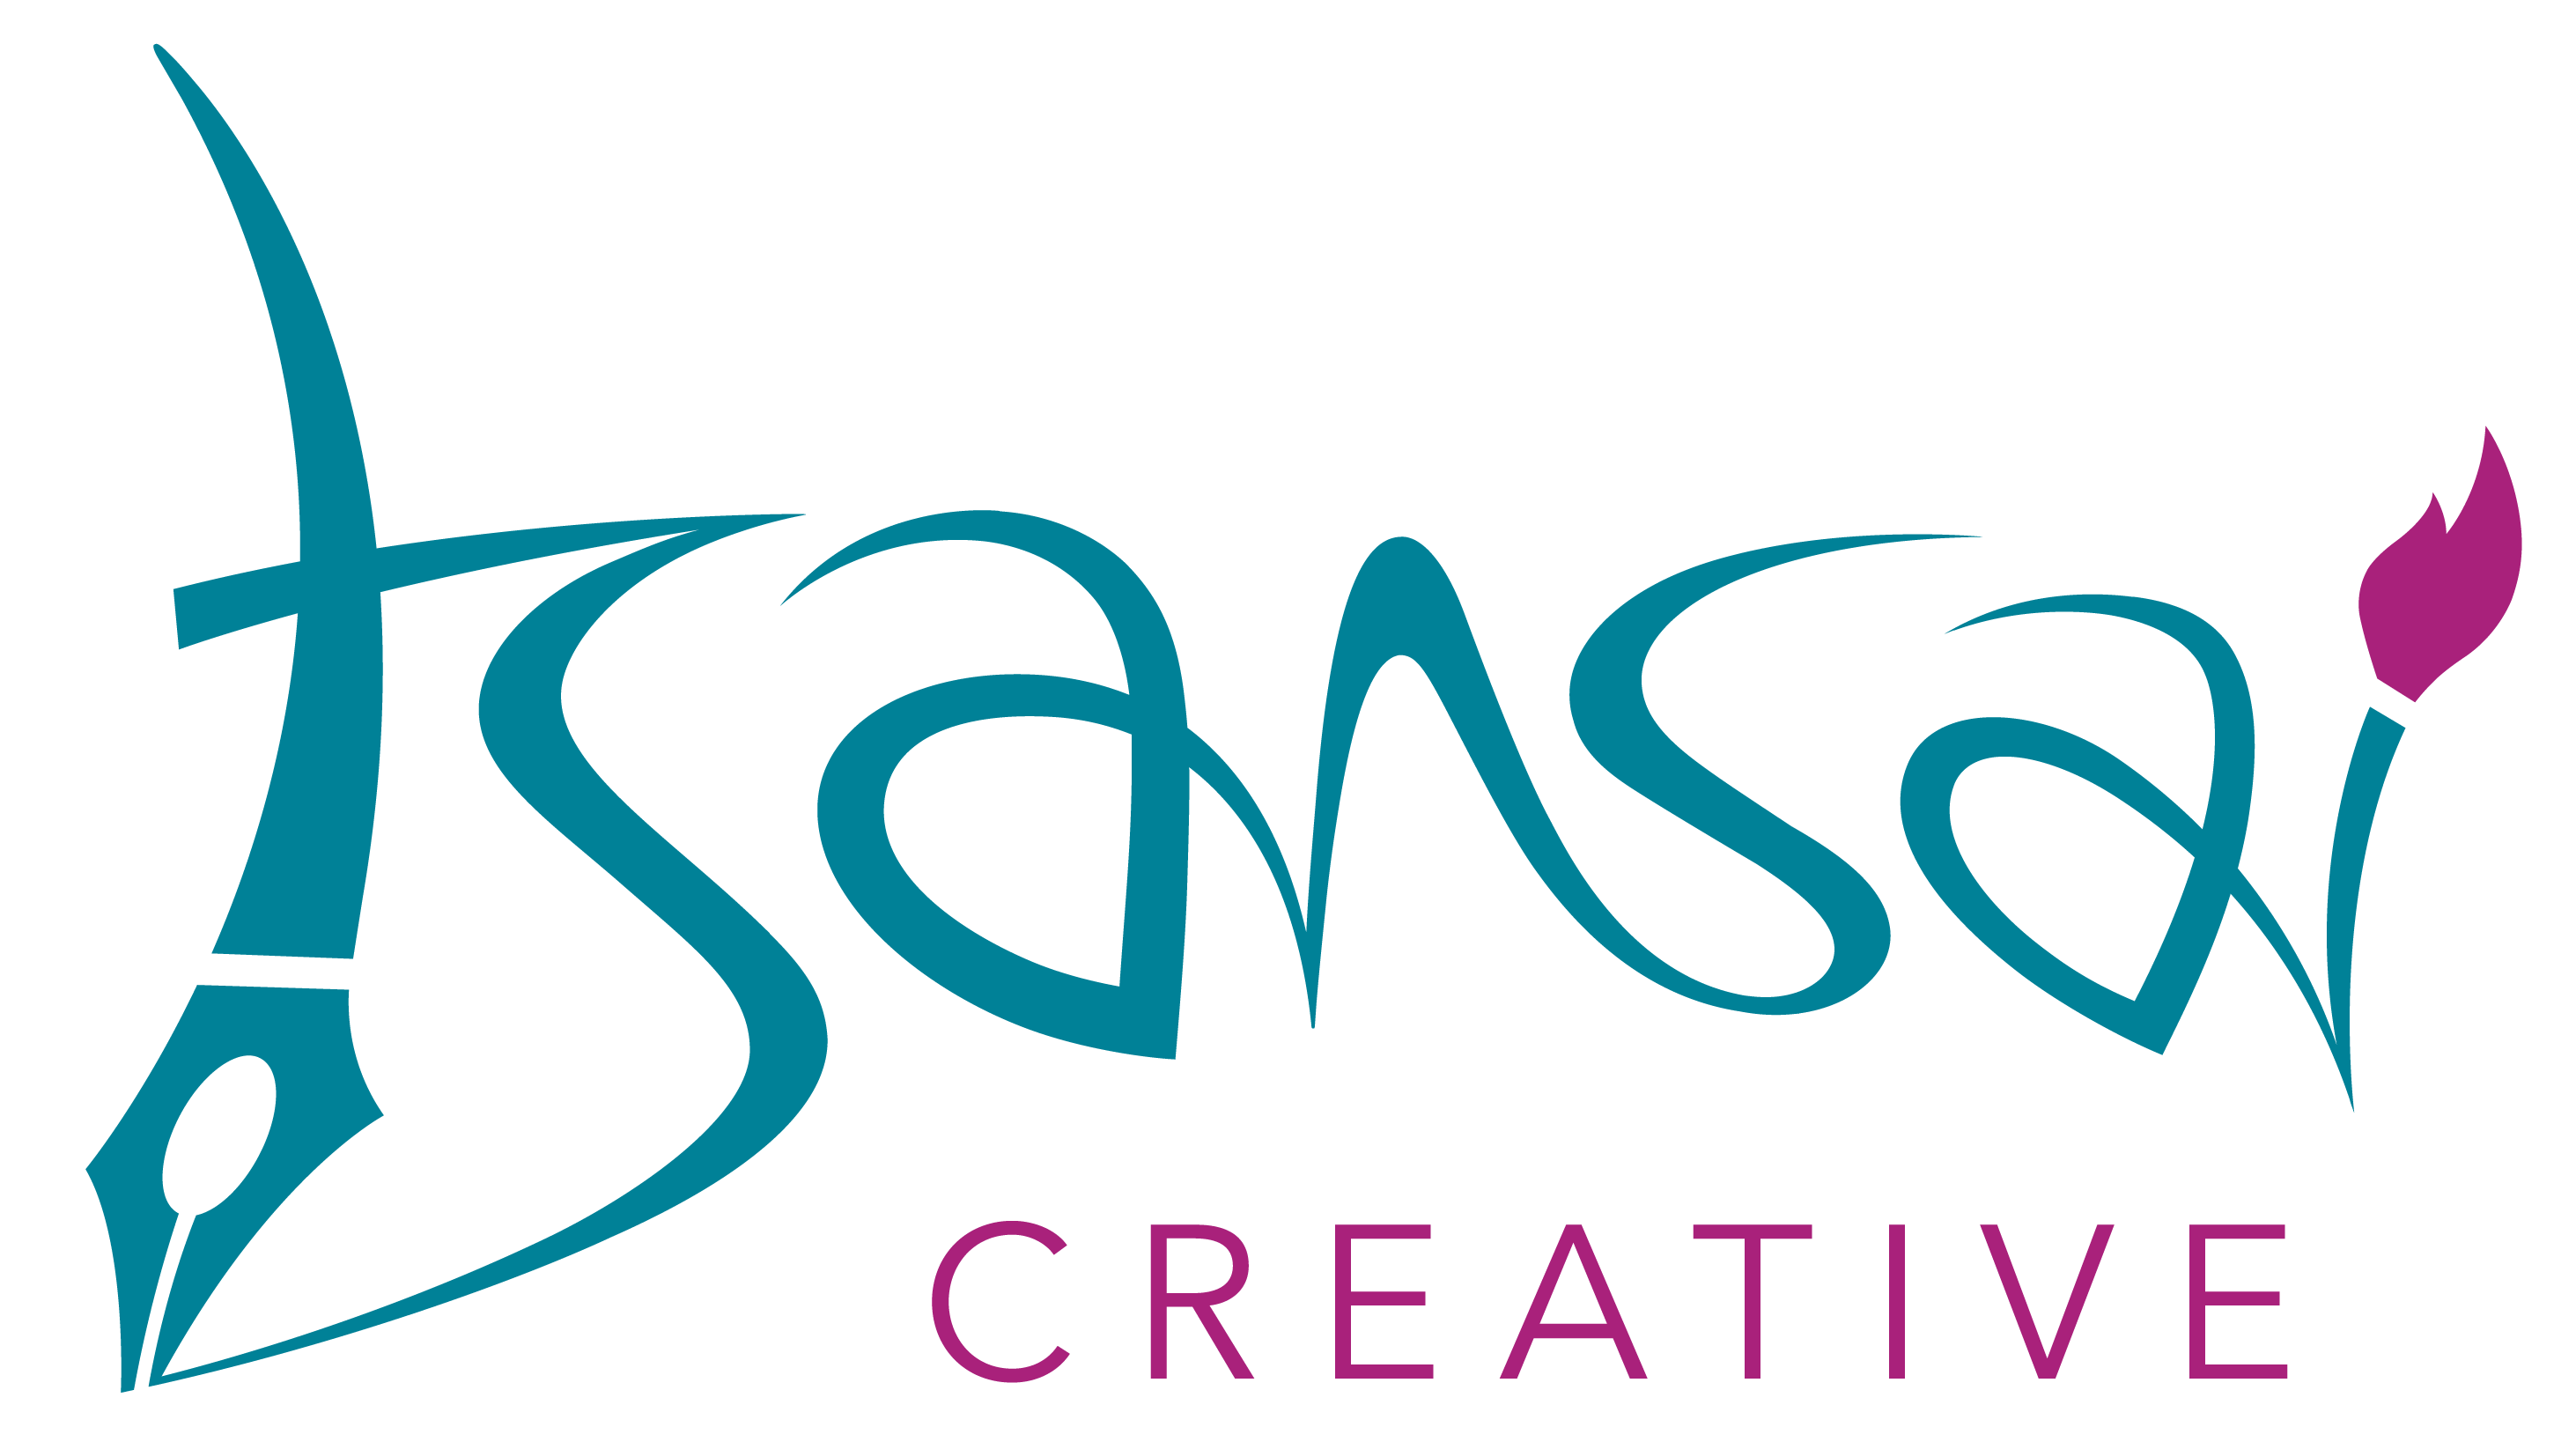 Tsansai-Creative-Services